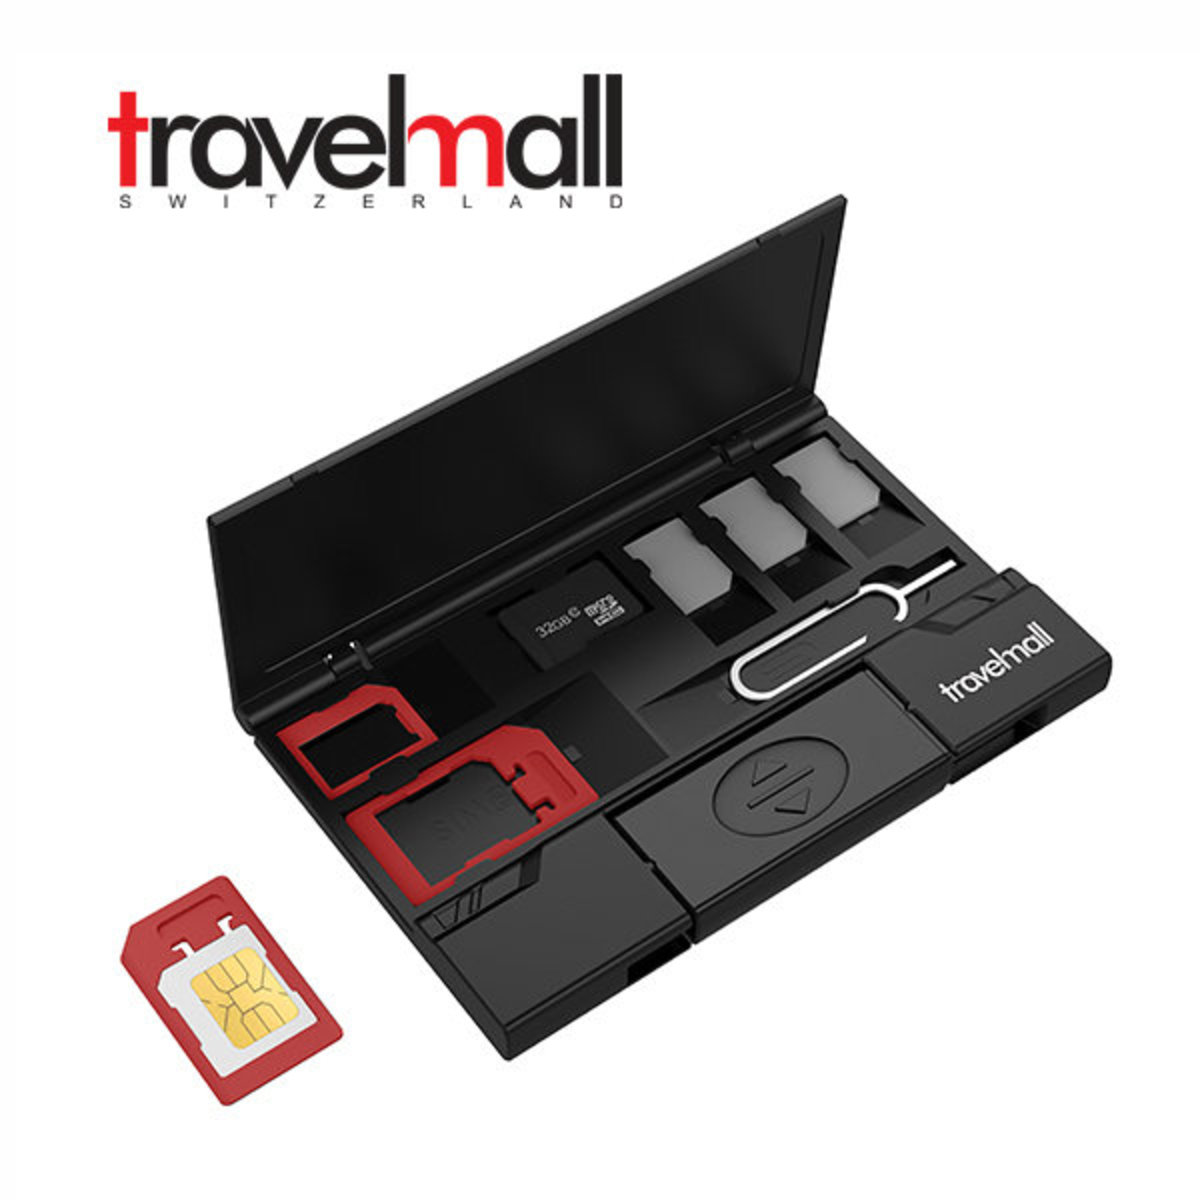 Travelmall 超薄型多存儲sim卡組織器 附type C Otg 讀取器 Hktvmall 香港最大網購平台